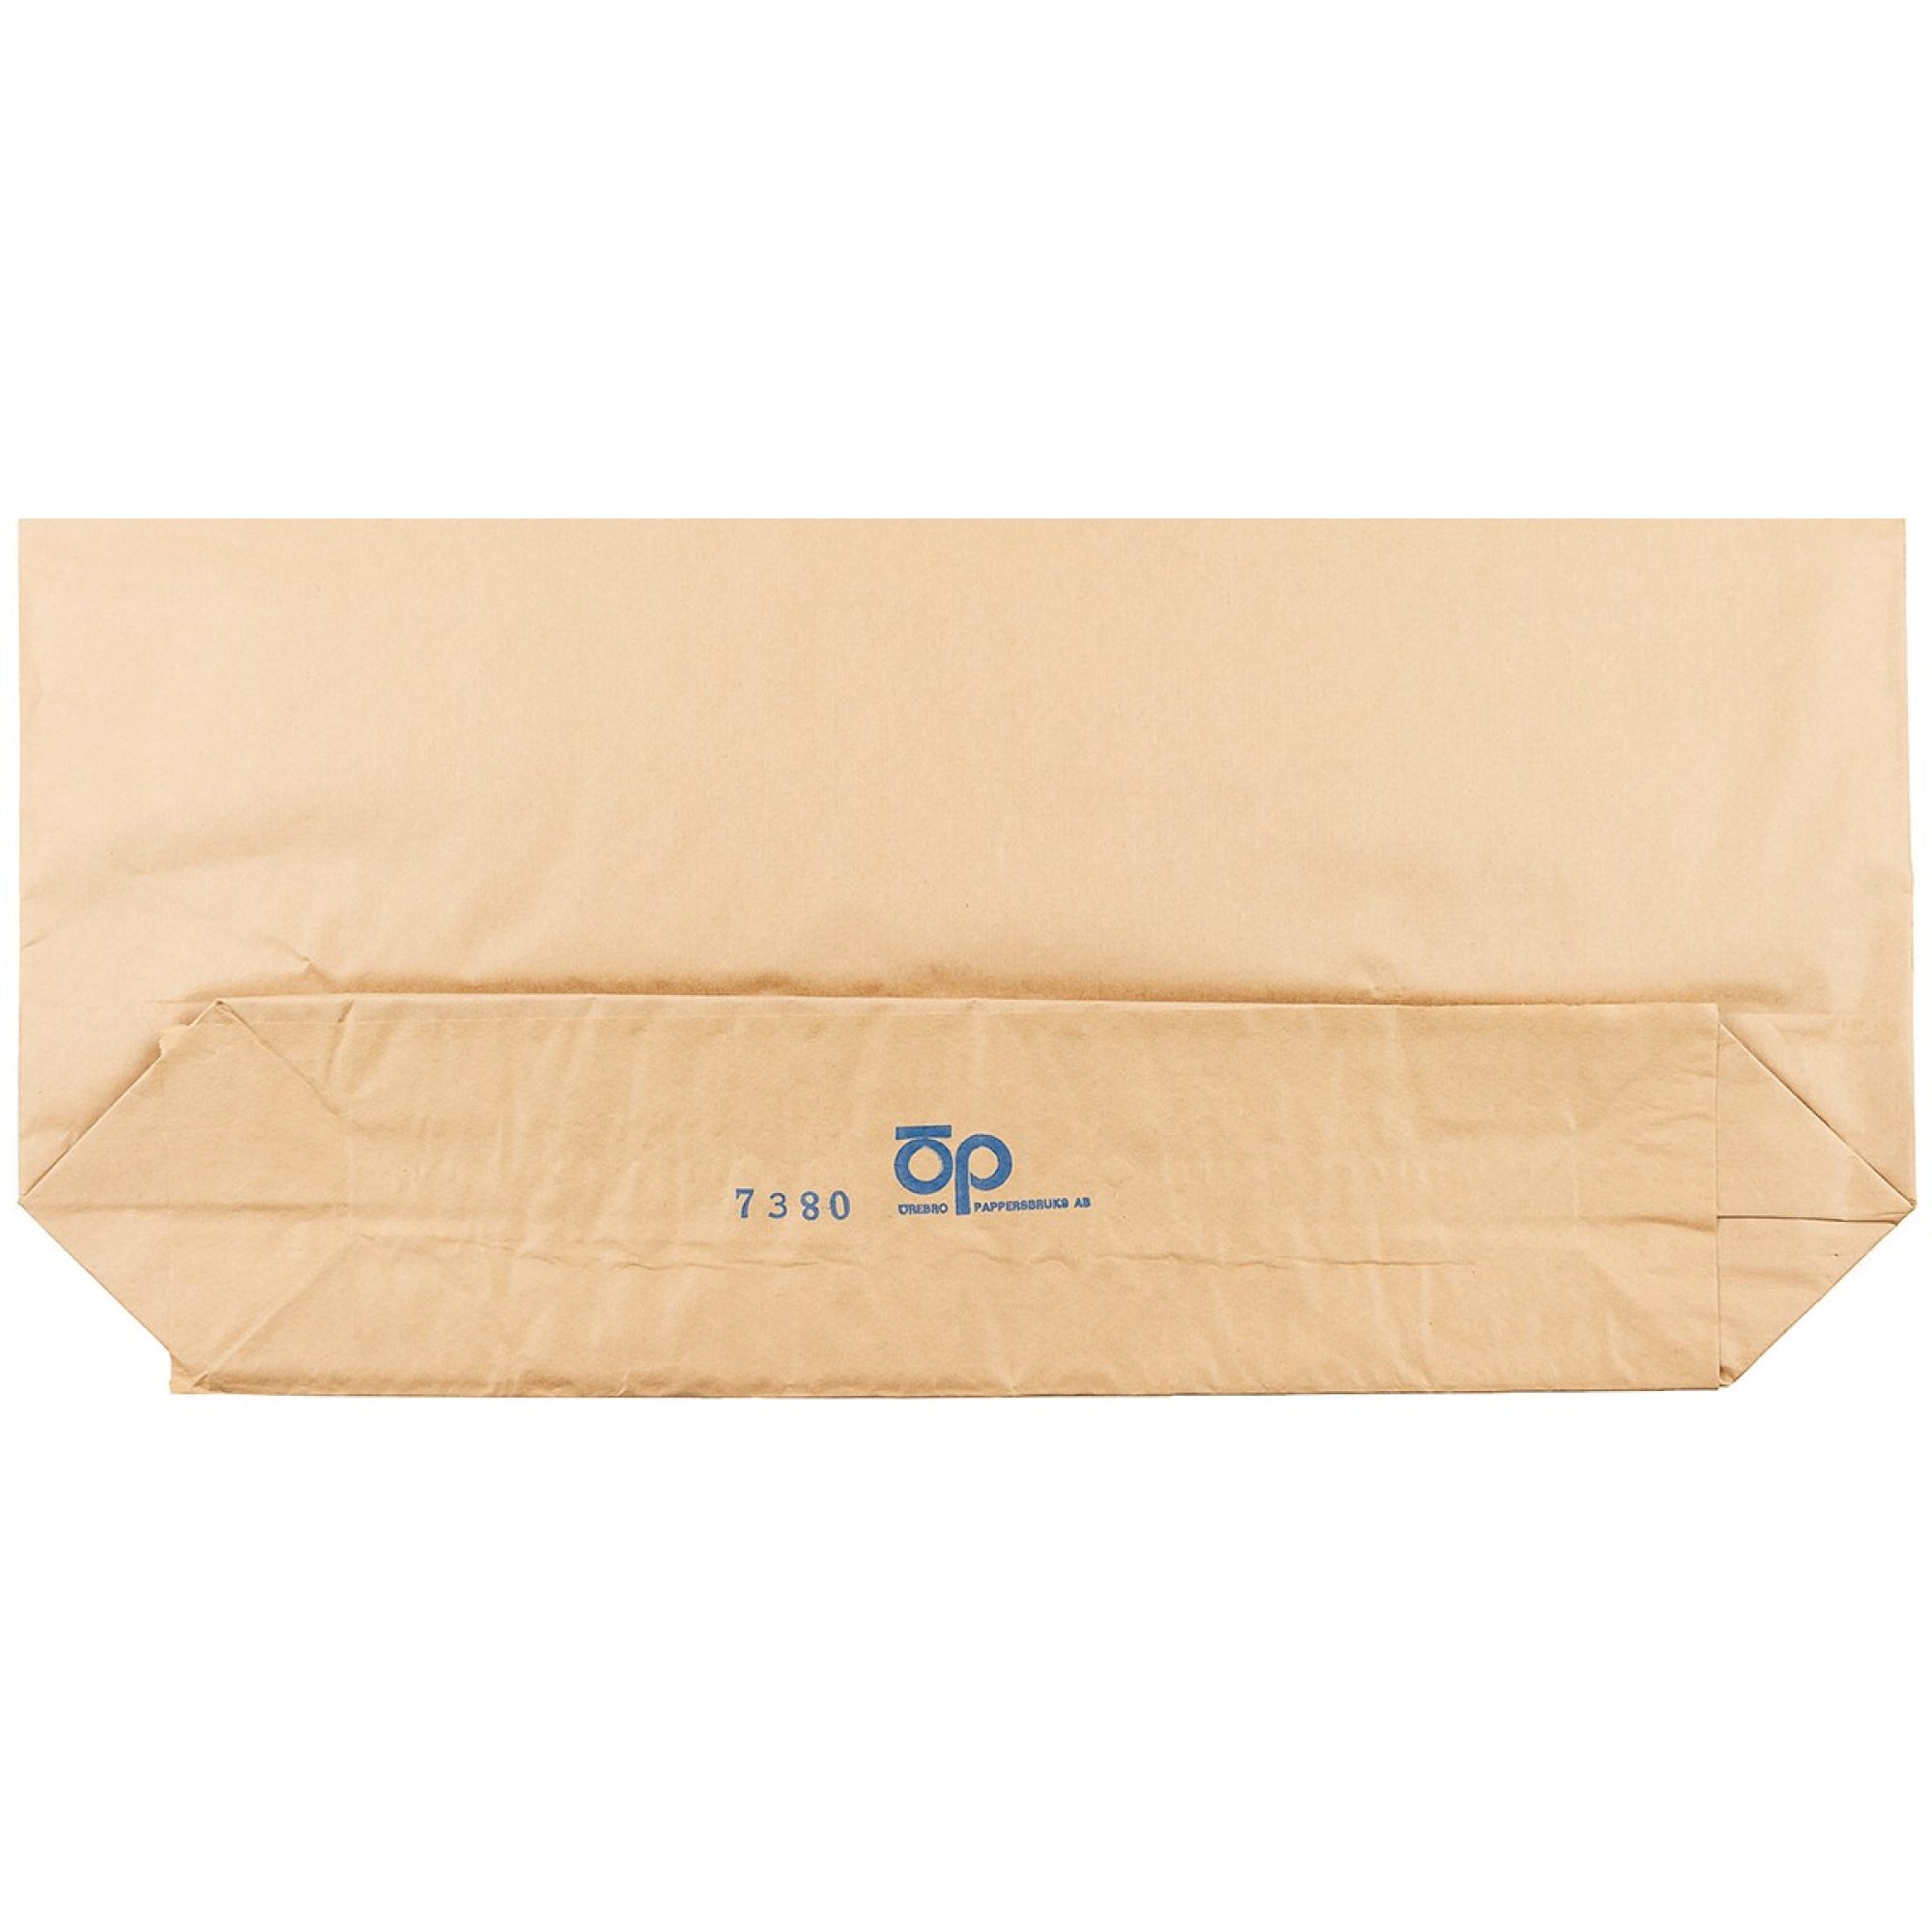 Schwed. Papiersack,  braun, 4-lagig,  Gr. 60×115 cm,  neuw. (10 Stück)